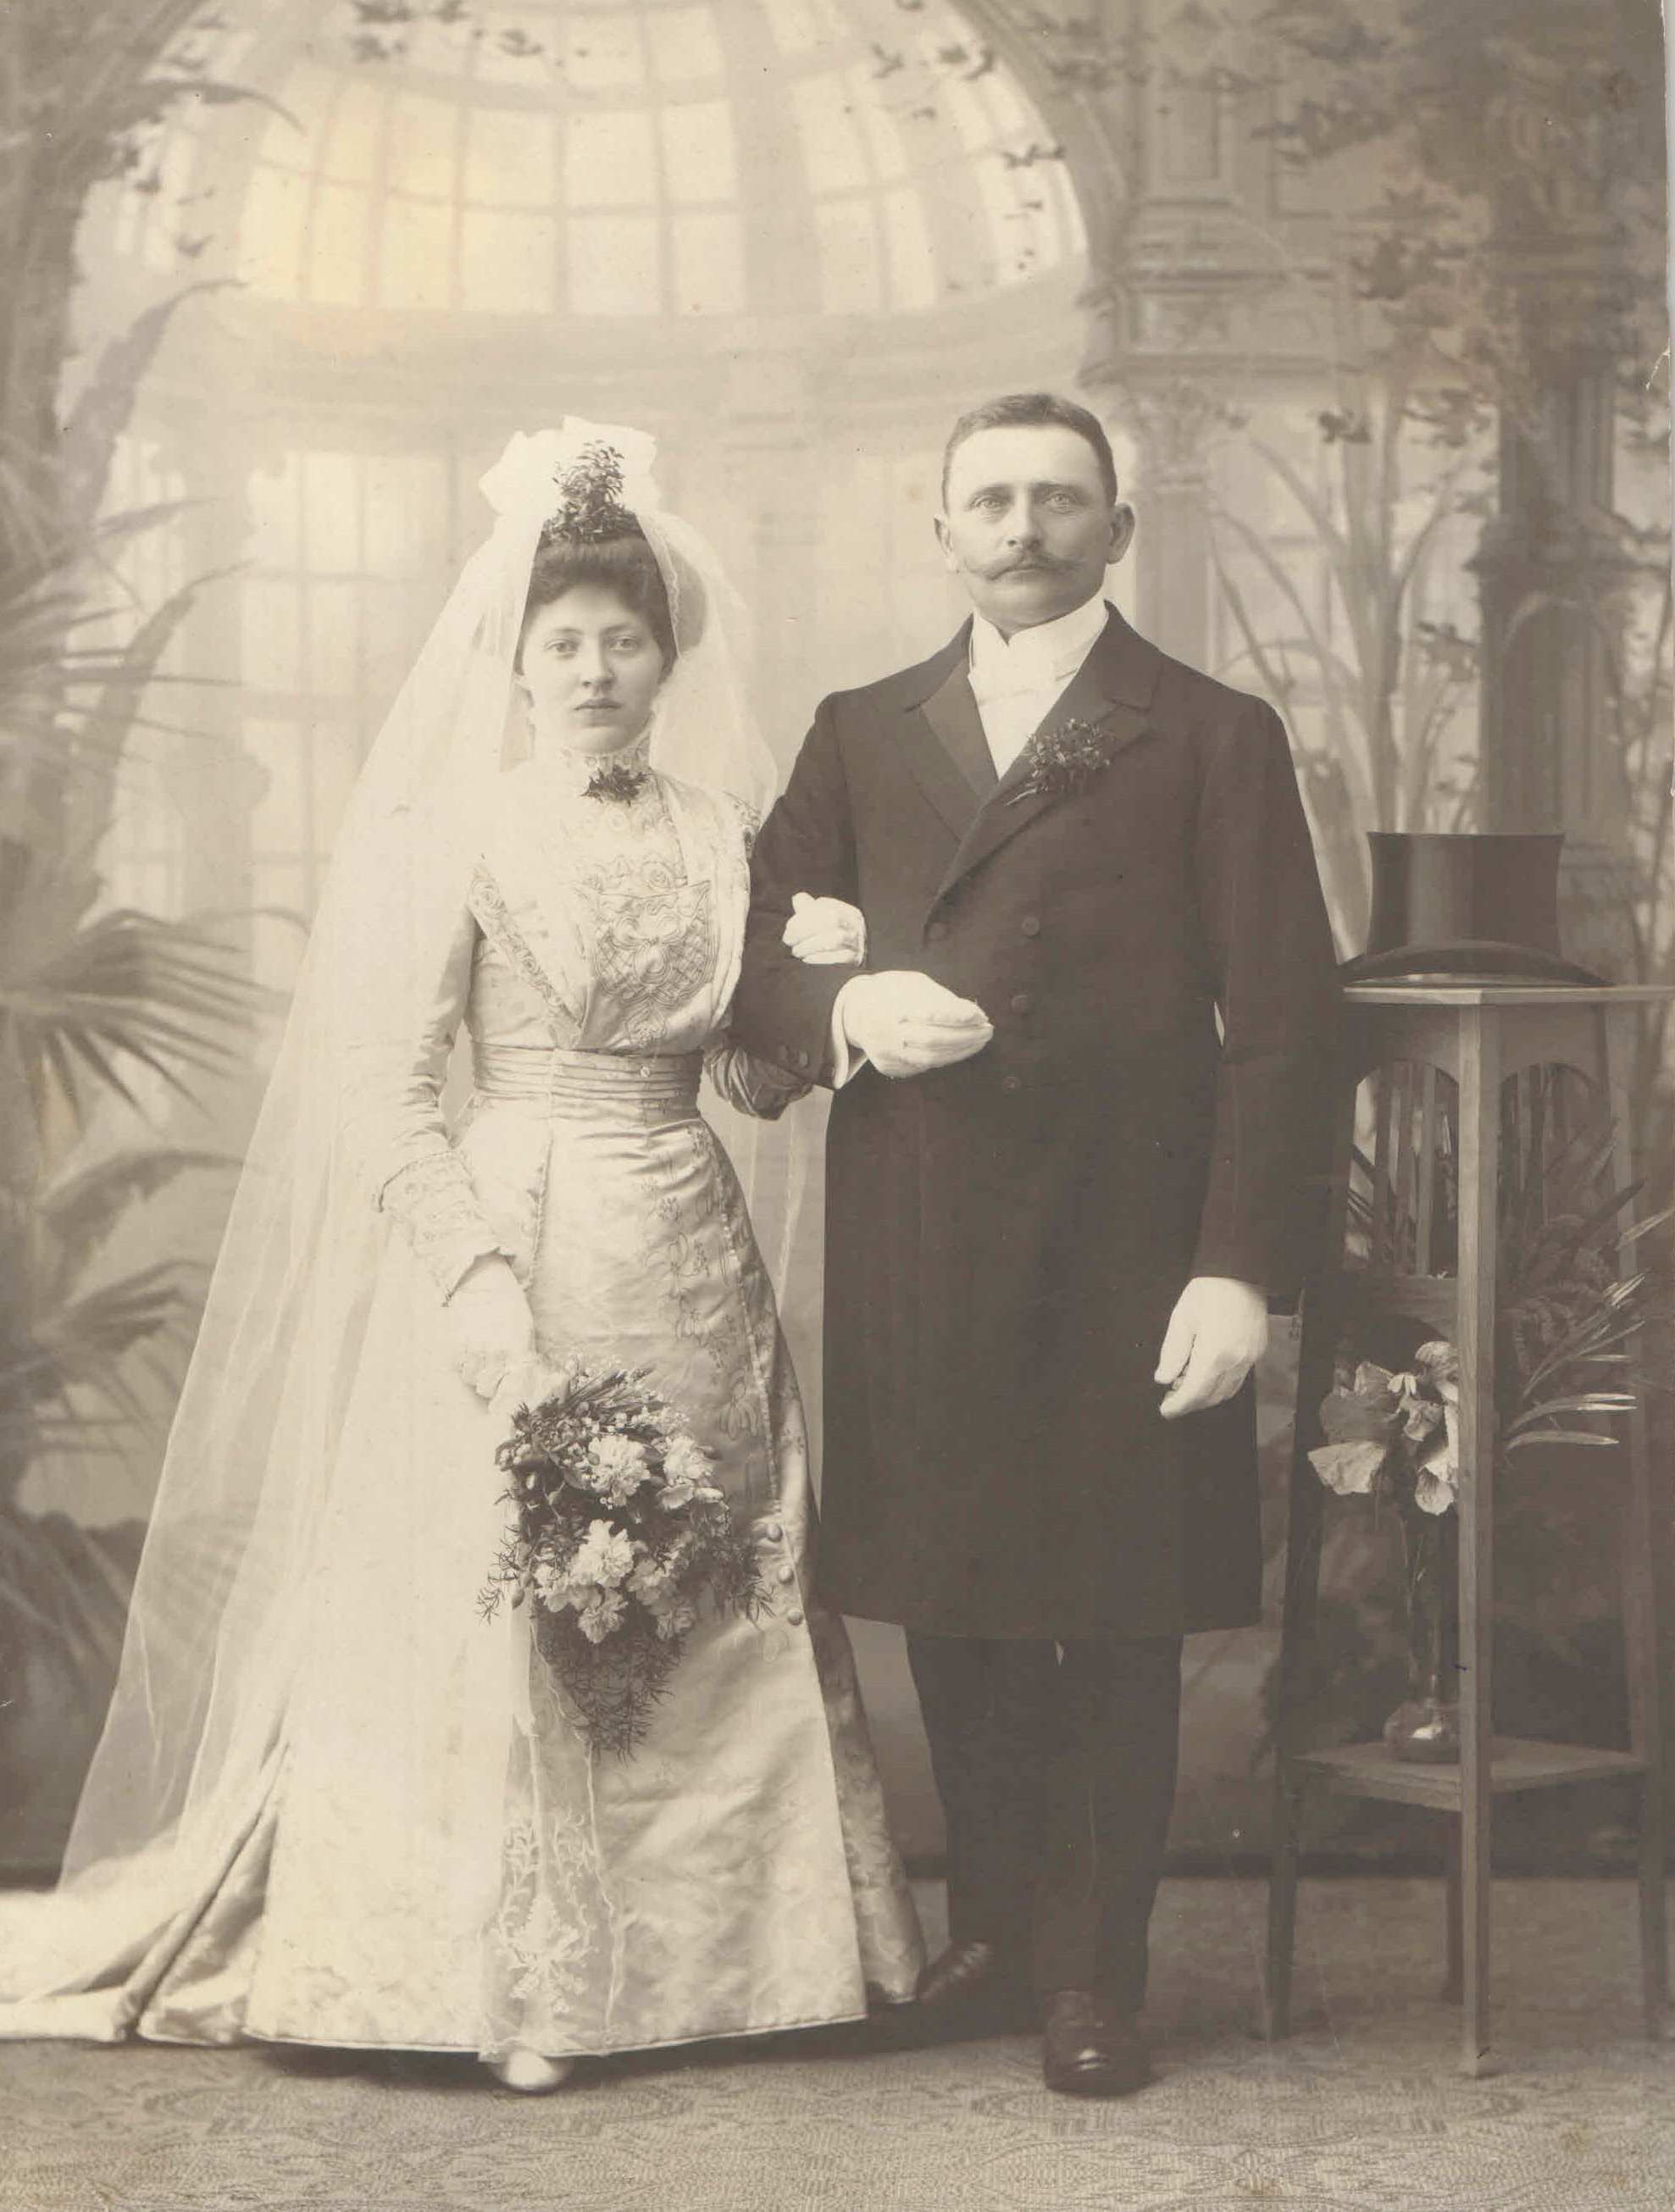 Familienchronik Sachsen: Gutsbesitzer Max Wilherlm Richter und seine Ehefrau  Elsa Johanna Michael, Hoczeit in Rochlitz, 1910.